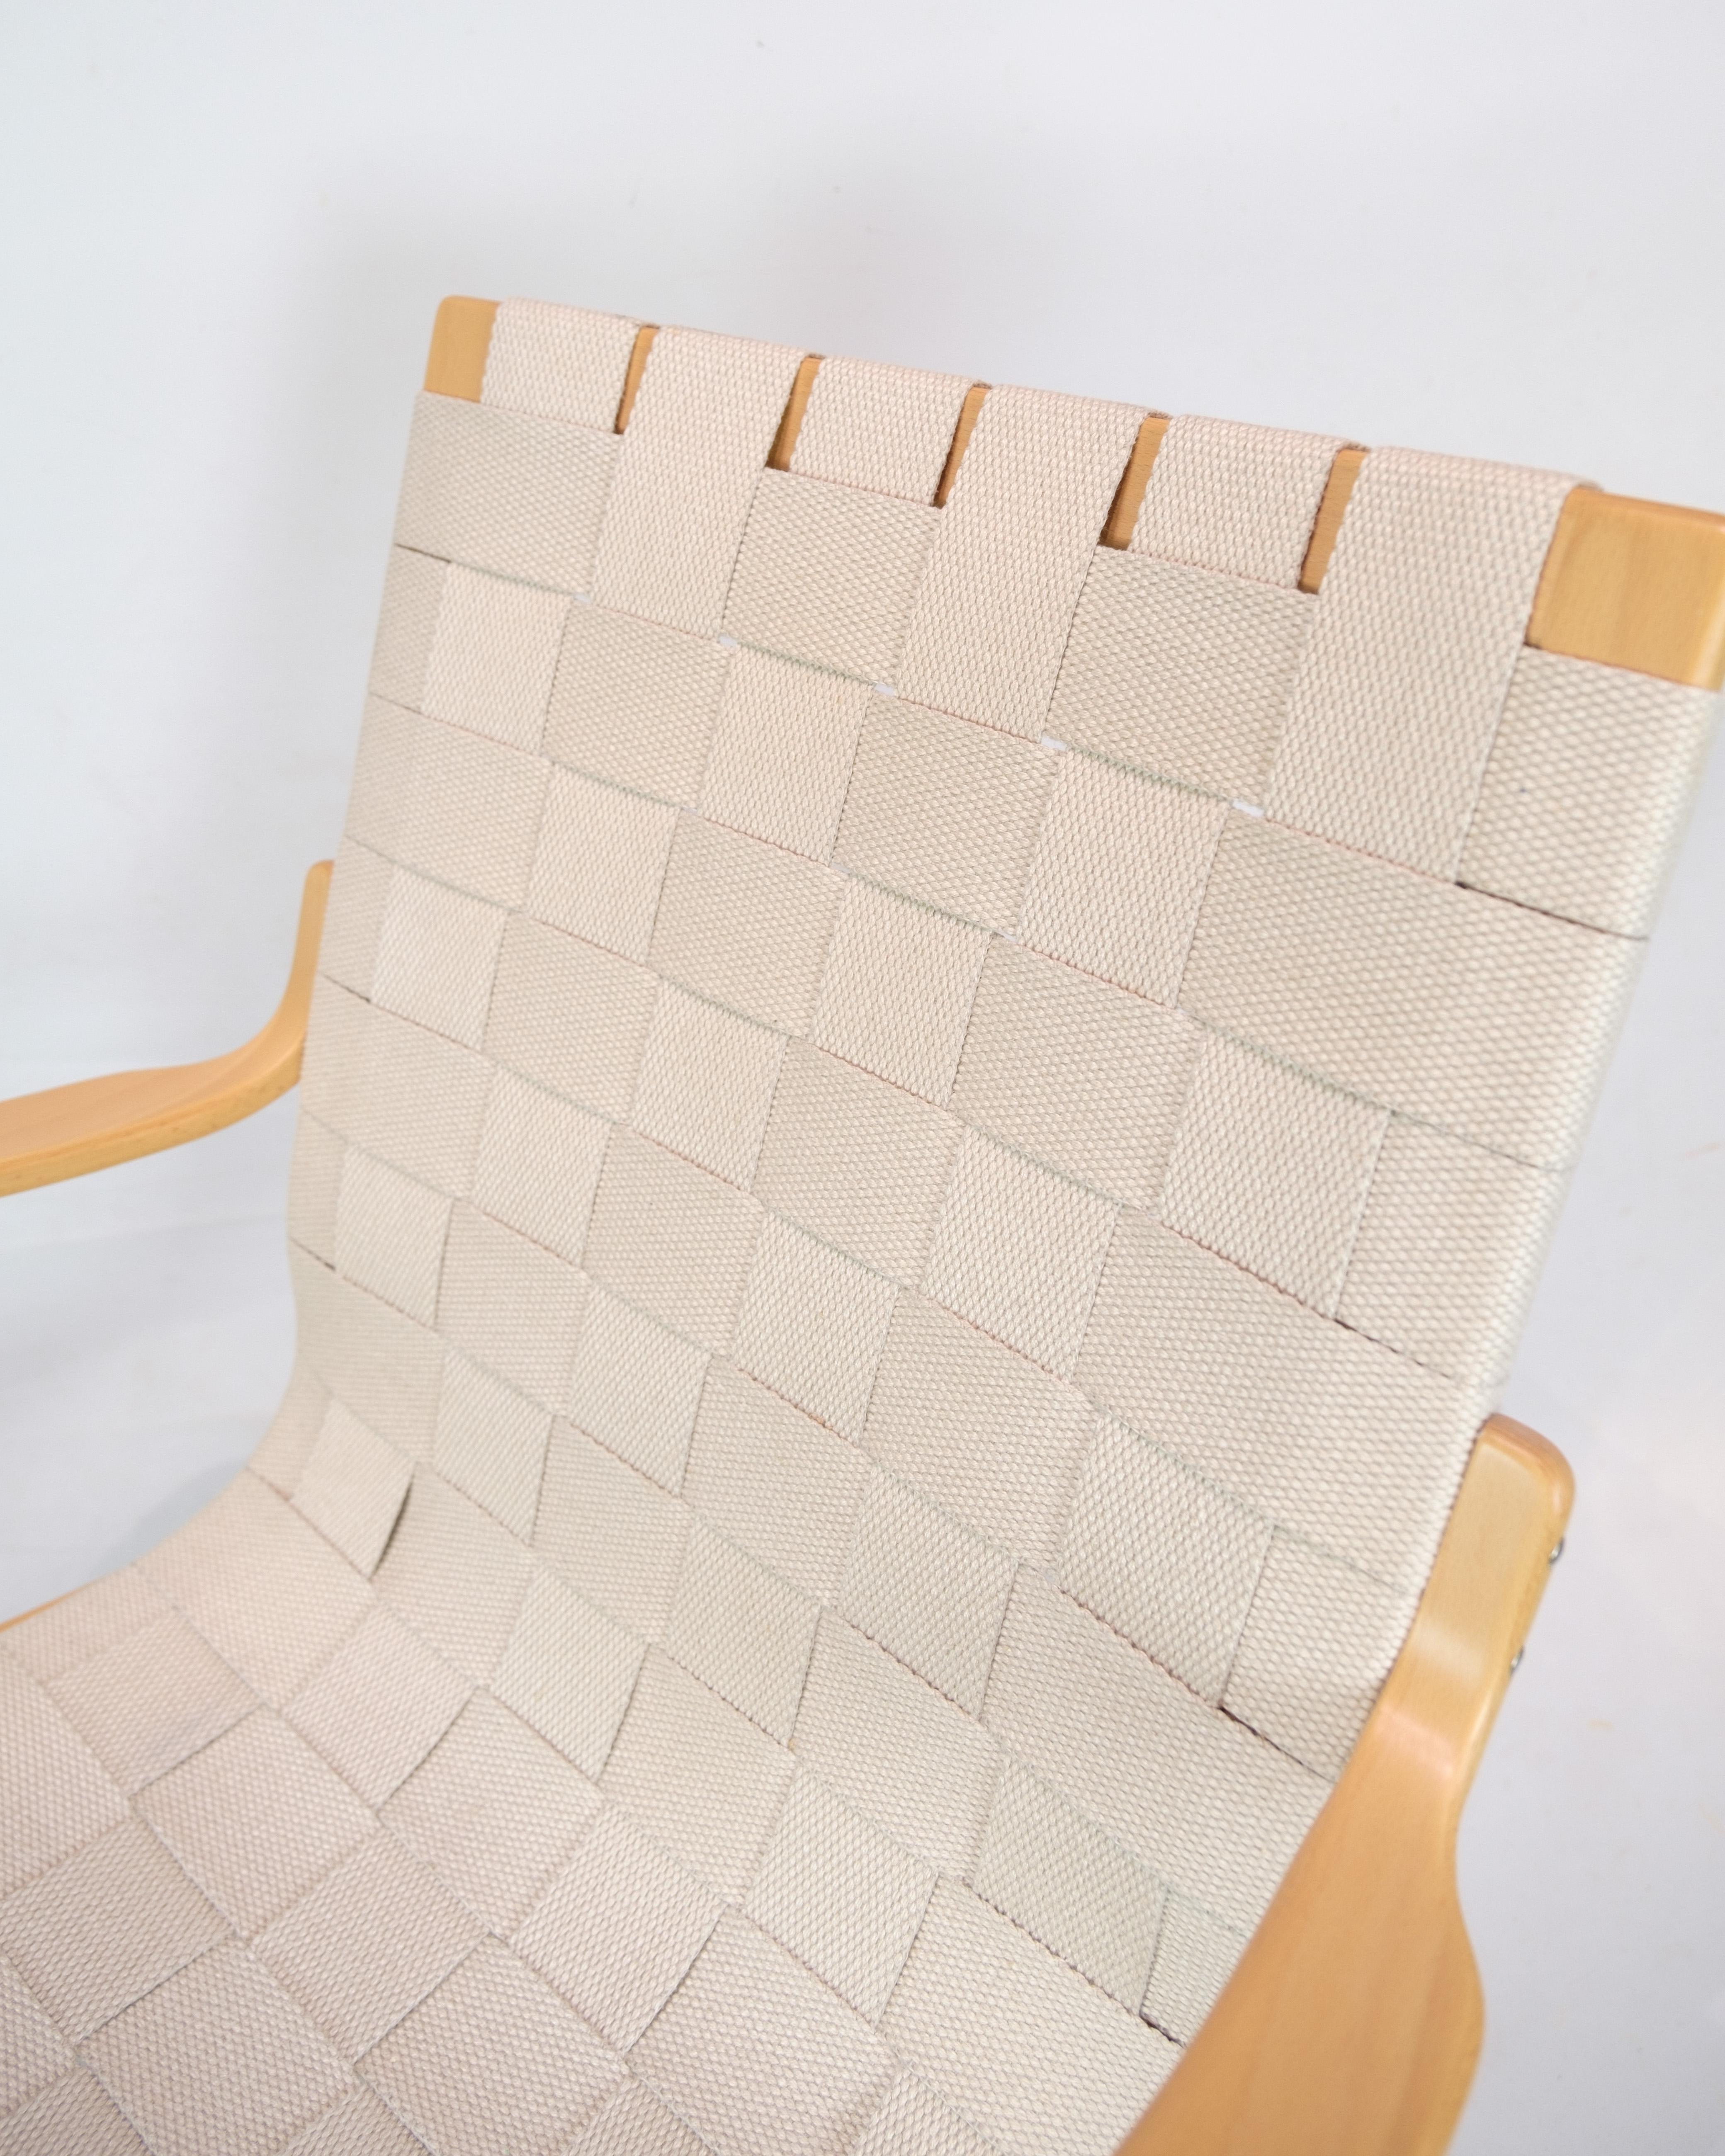 Dieser Sessel, bekannt als Modell Mina, ist ein beispielhaftes Möbelstück des bekannten schwedischen Designers Bruno Mathsson. Der Stuhl ist aus gebogener Buche gefertigt, was ihm eine natürliche und elegante Form verleiht.

Eine Besonderheit dieses